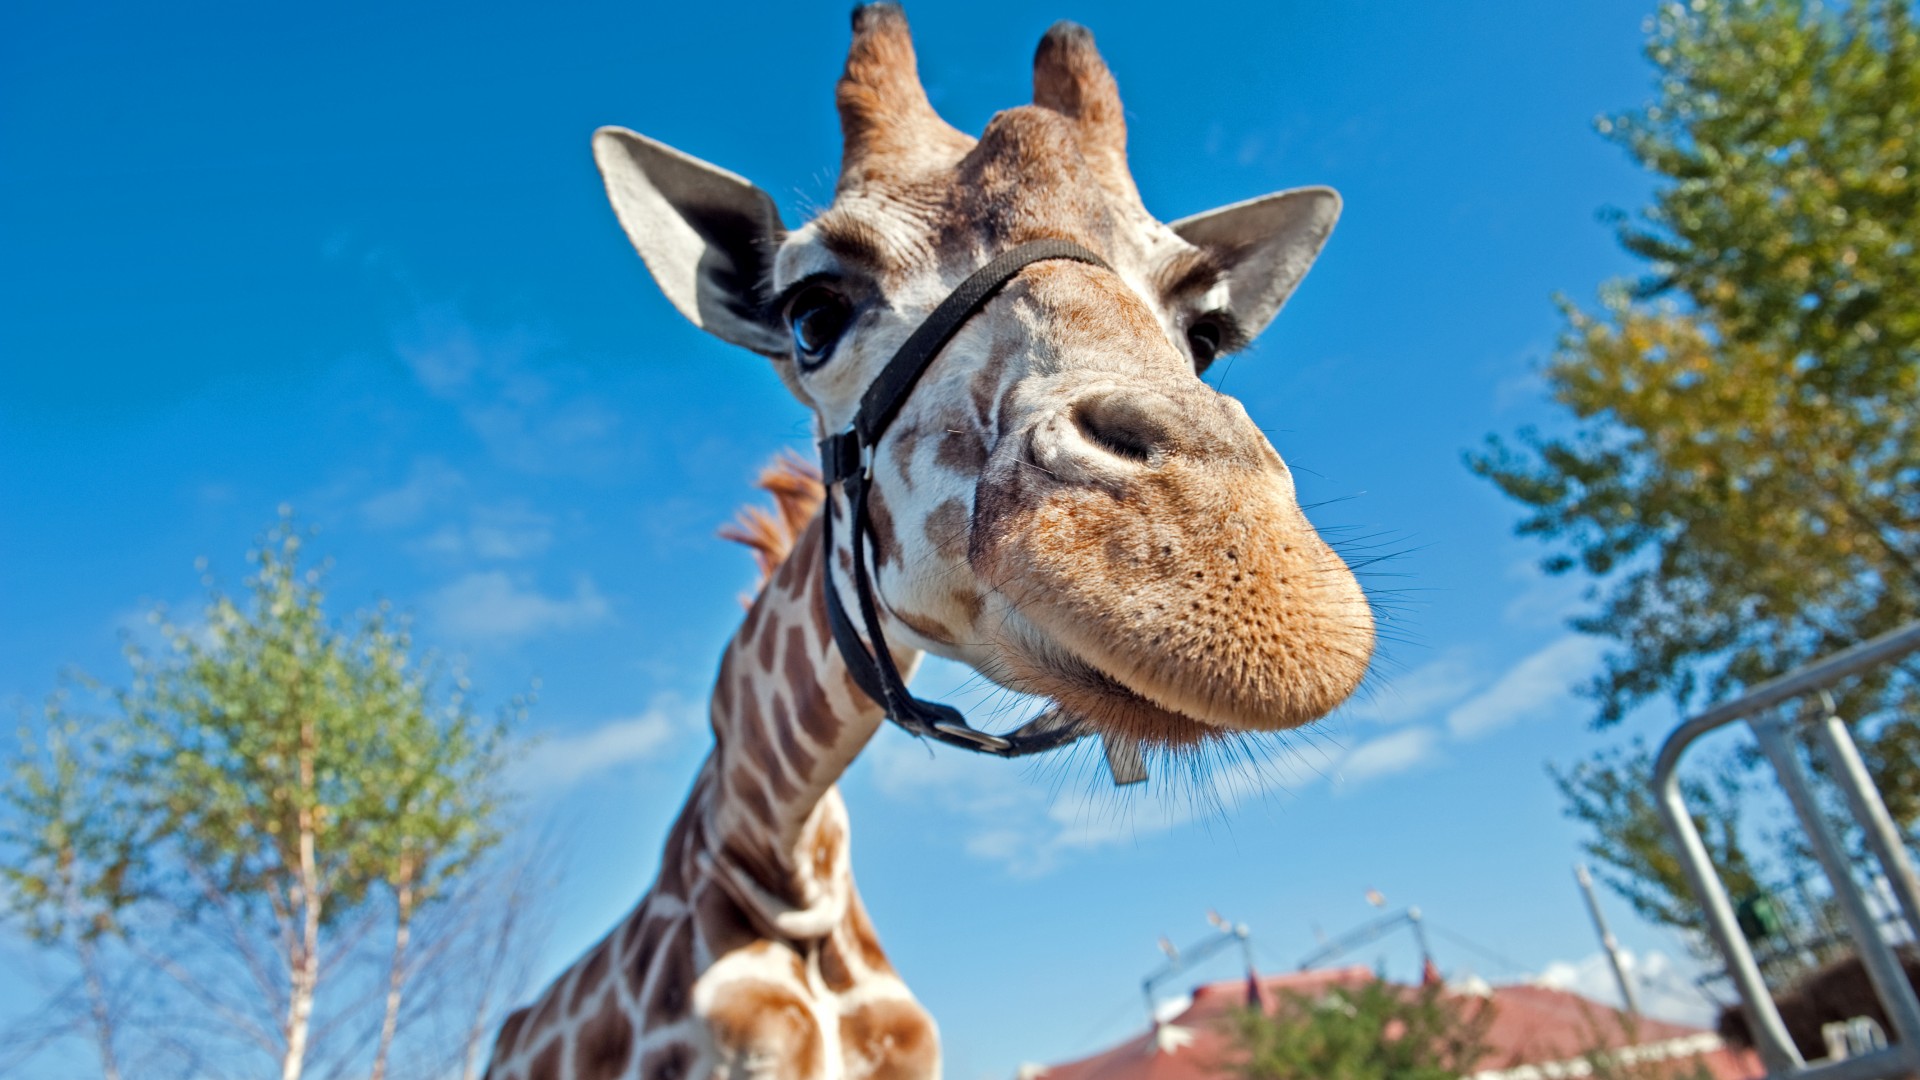 Giraffe, Berolina Circus, Berlin, Germany, blue sky, circus, funny, close-up, tourism (horizontal)